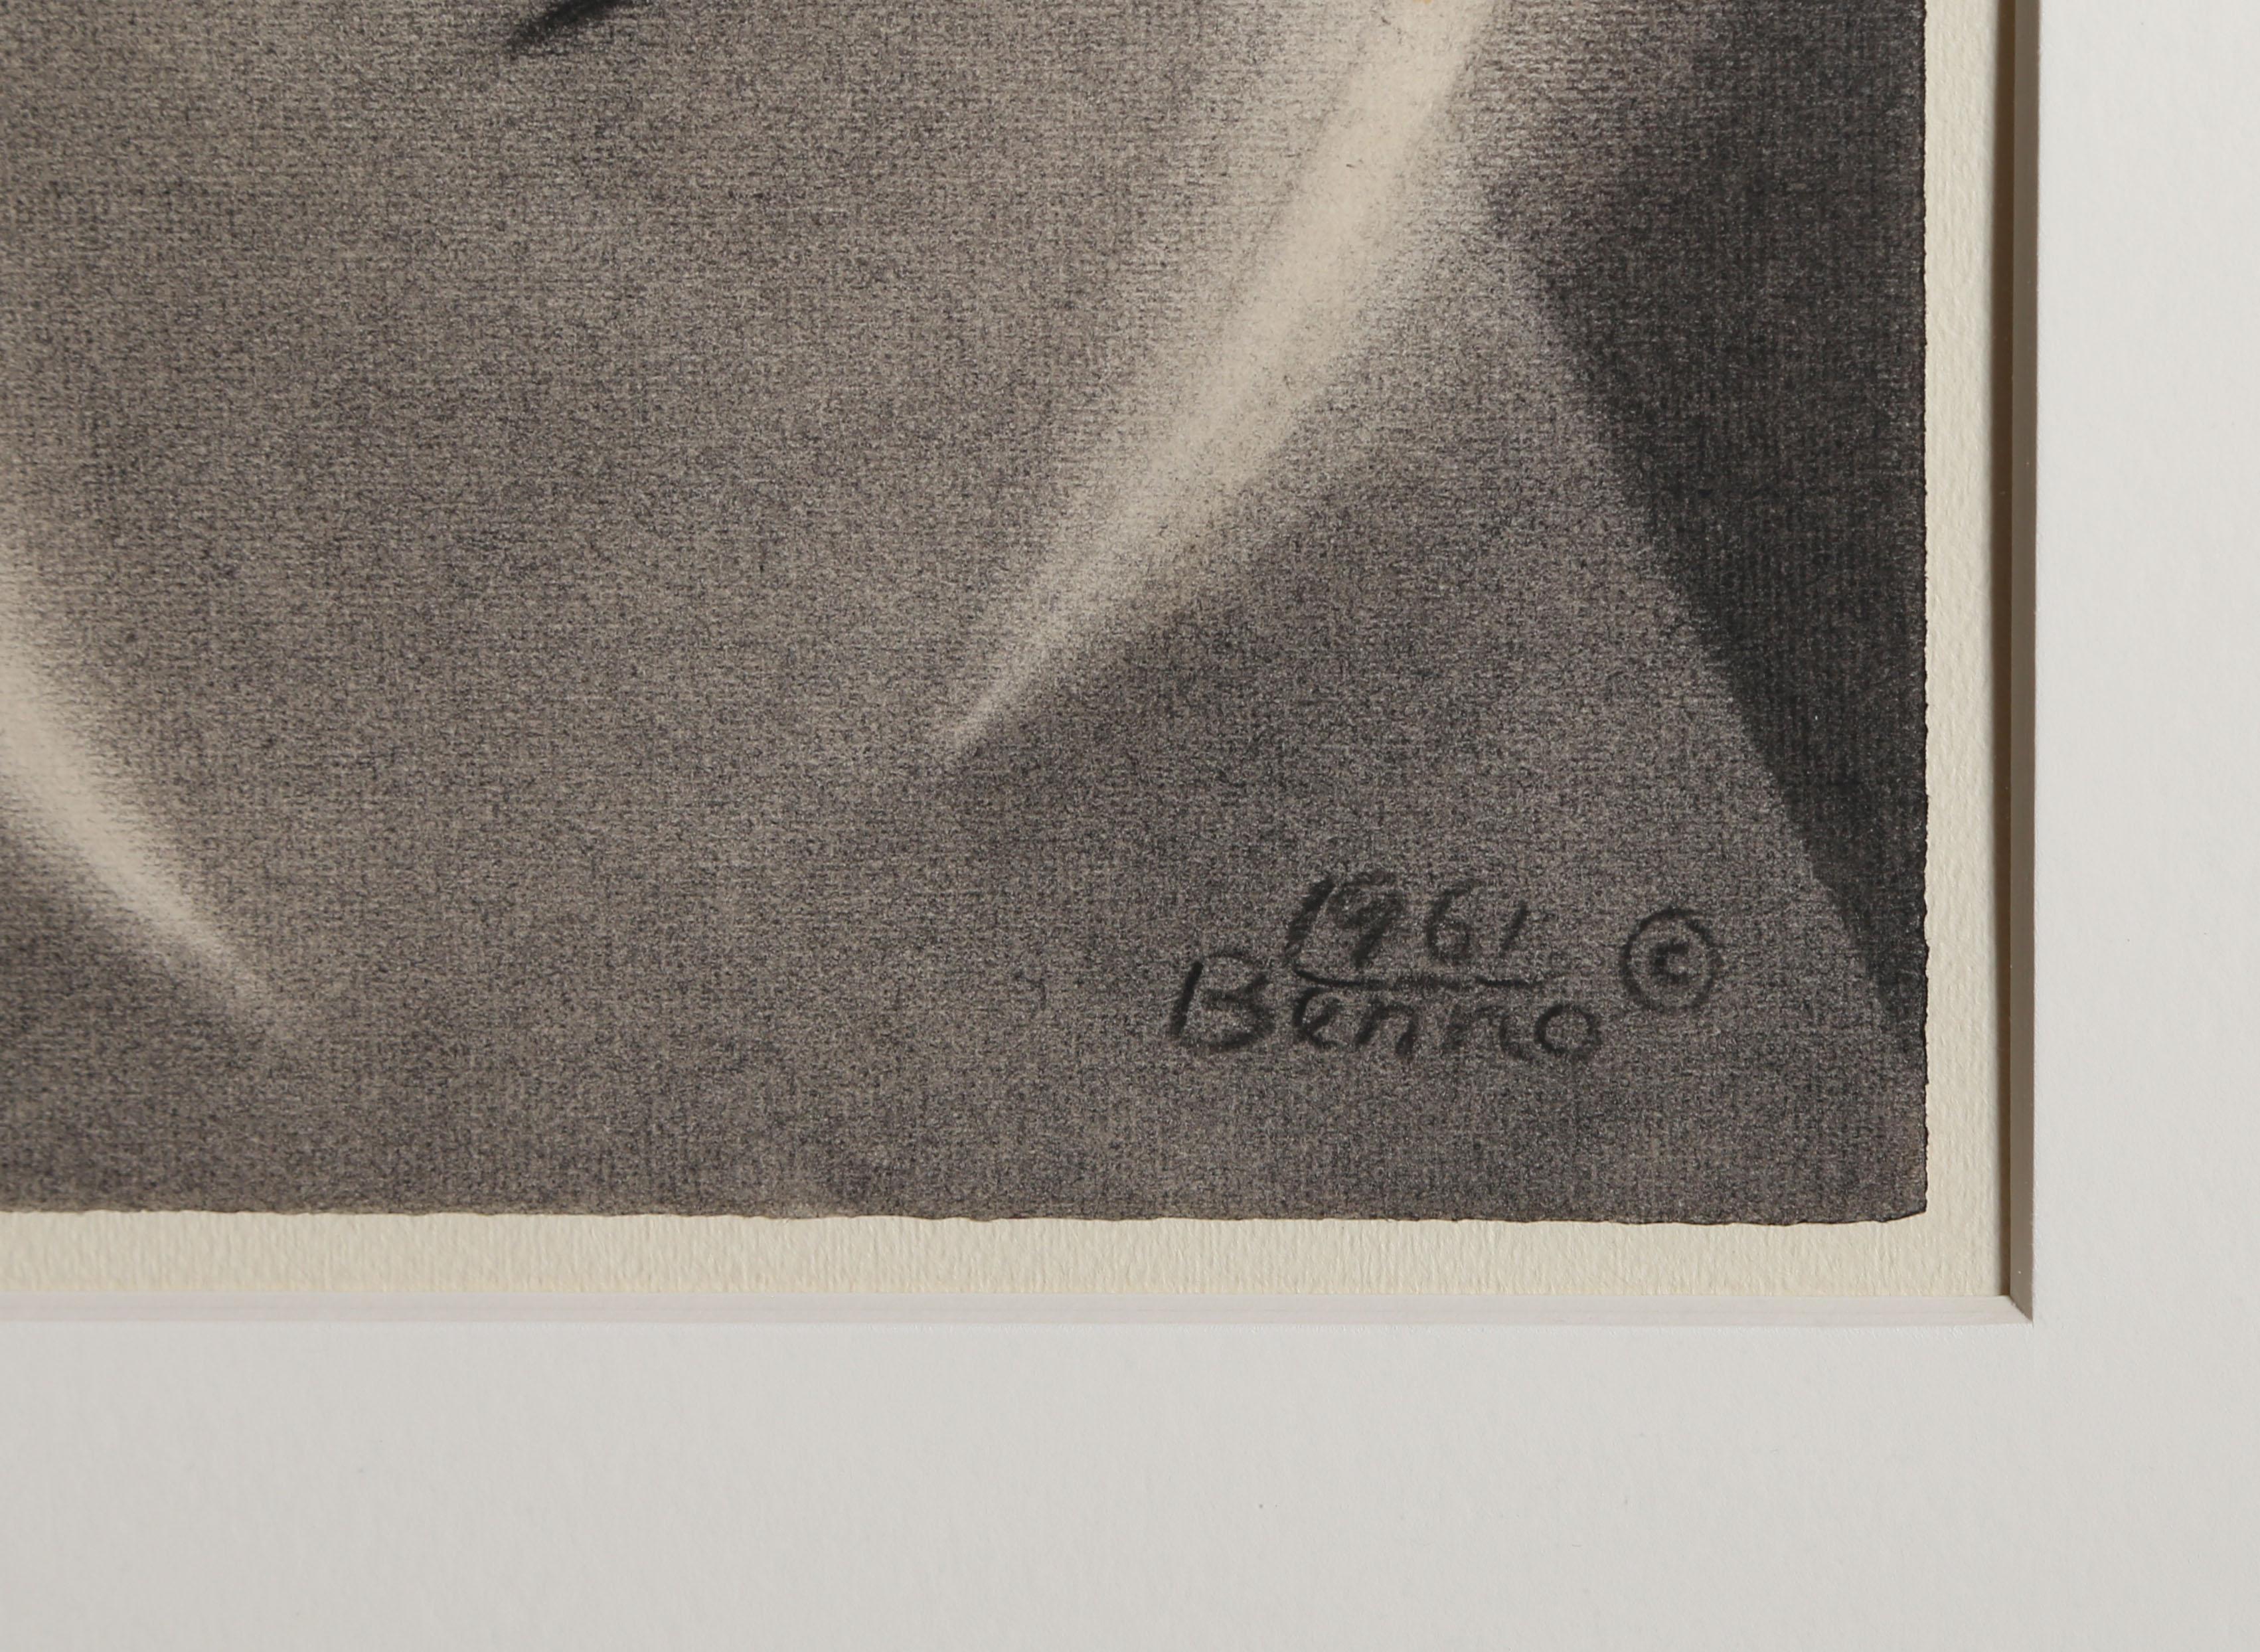 Das Leben eines Comma, moderne abstrakte Stillleben-Zeichnung von Benjamin Benno 1961 (Beige), Abstract Drawing, von Benjamin G. Benno